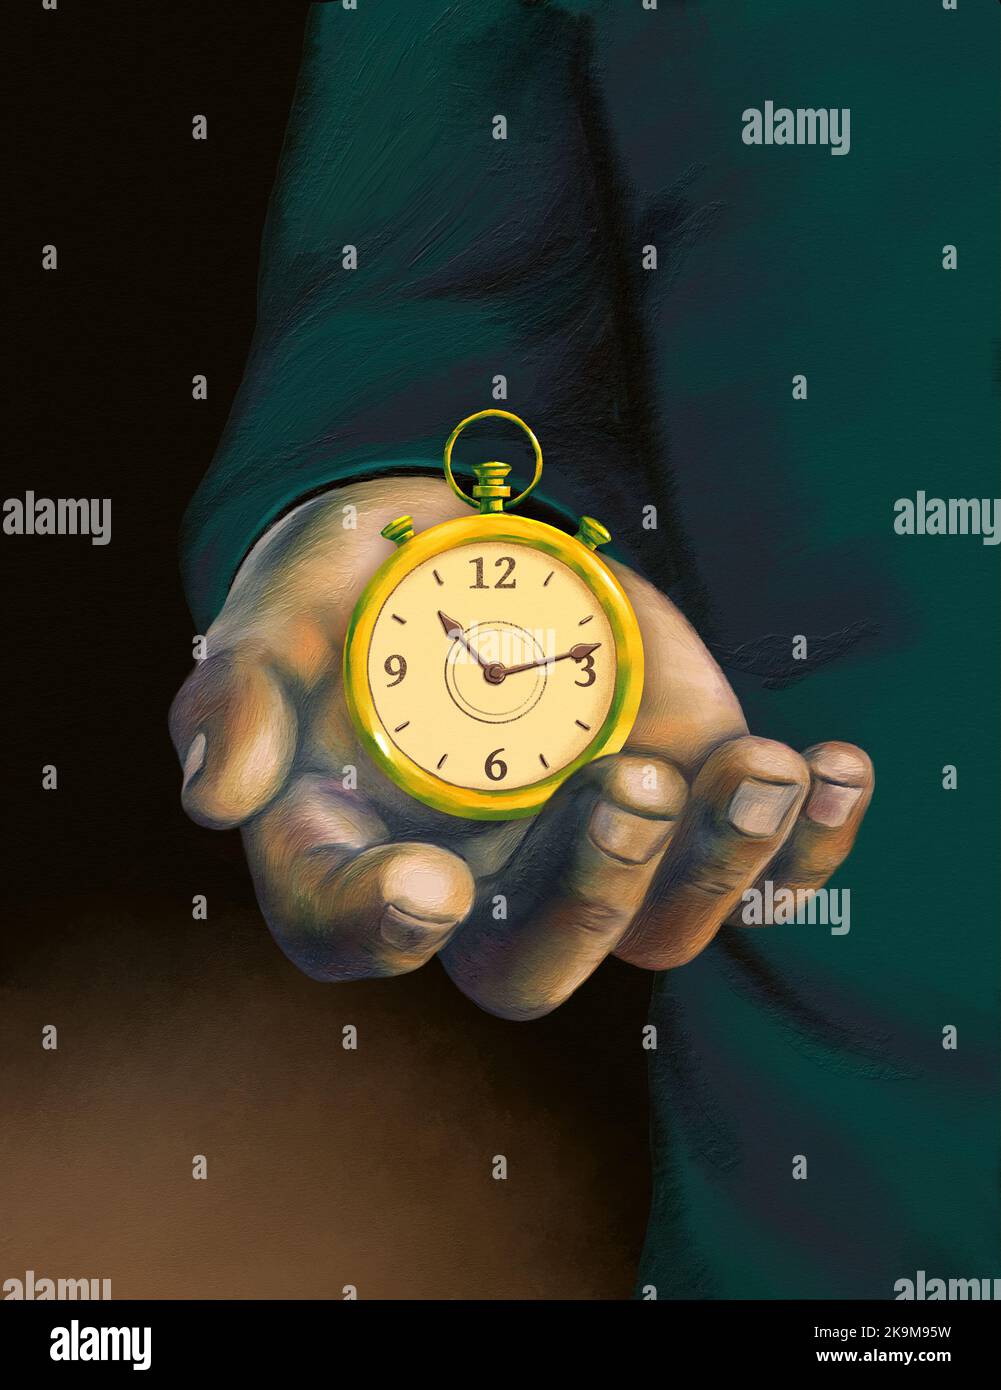 Mano abierta mostrando un reloj antiguo. Ilustración digital pintada a mano. Foto de stock